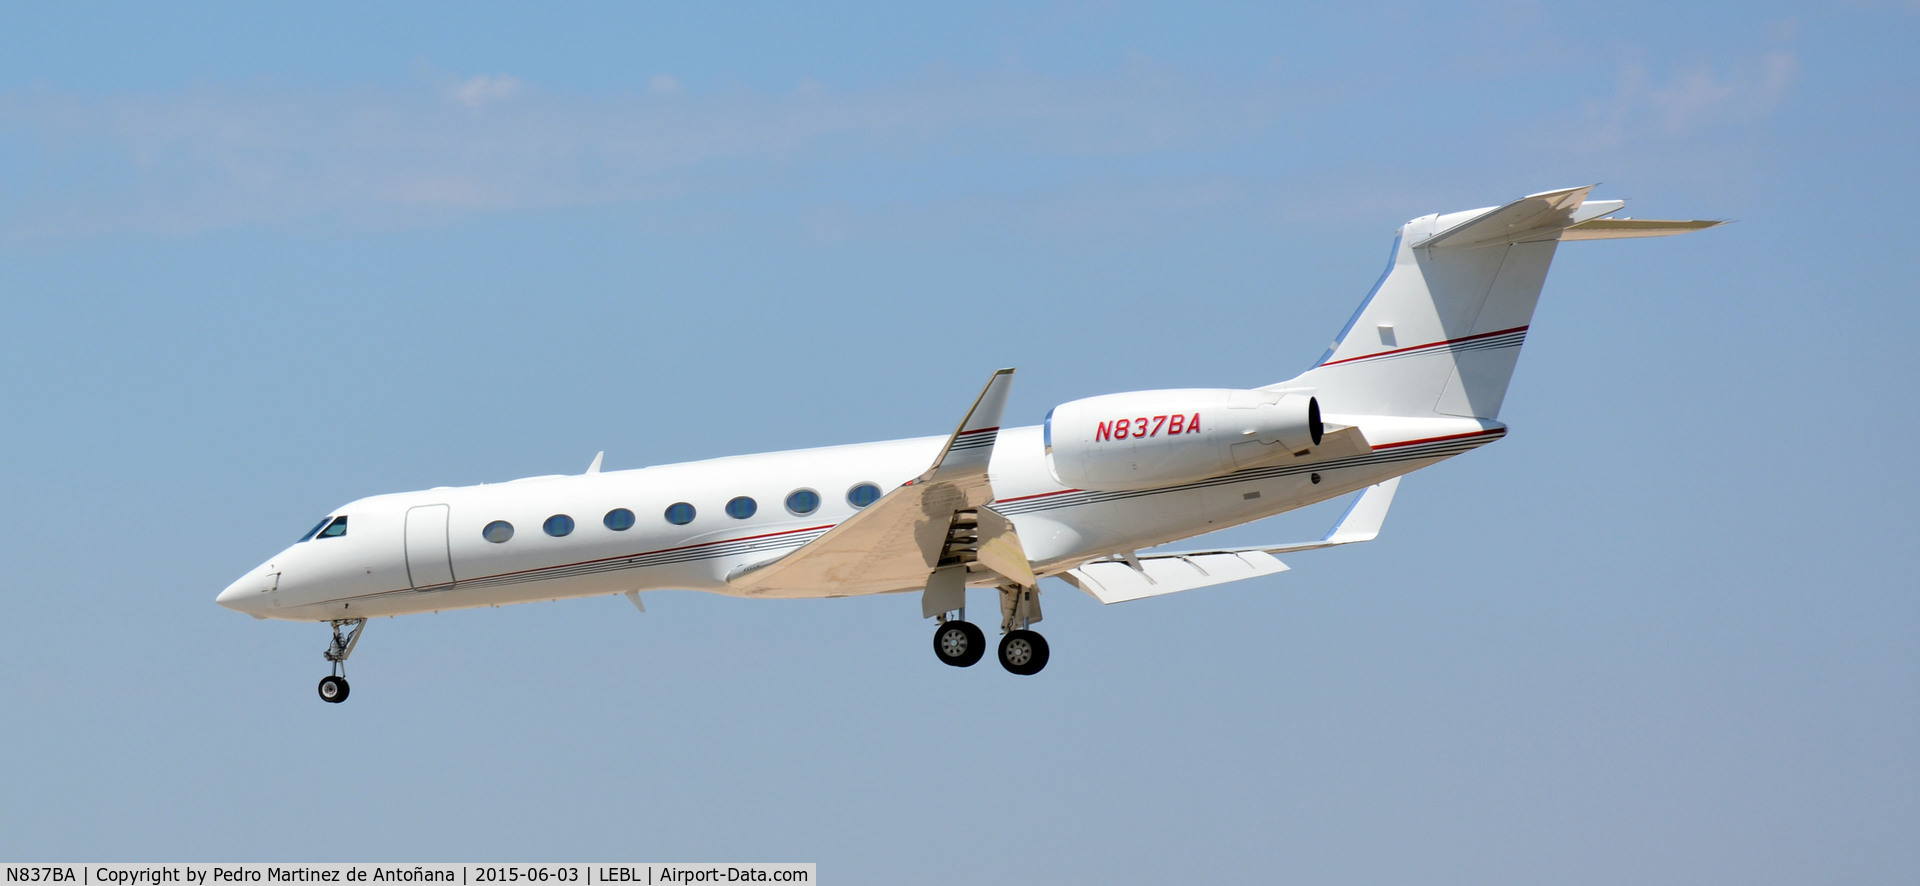 N837BA, 2006 Gulfstream Aerospace GV-SP (G550) C/N 5122, El Prat Barcelona - España